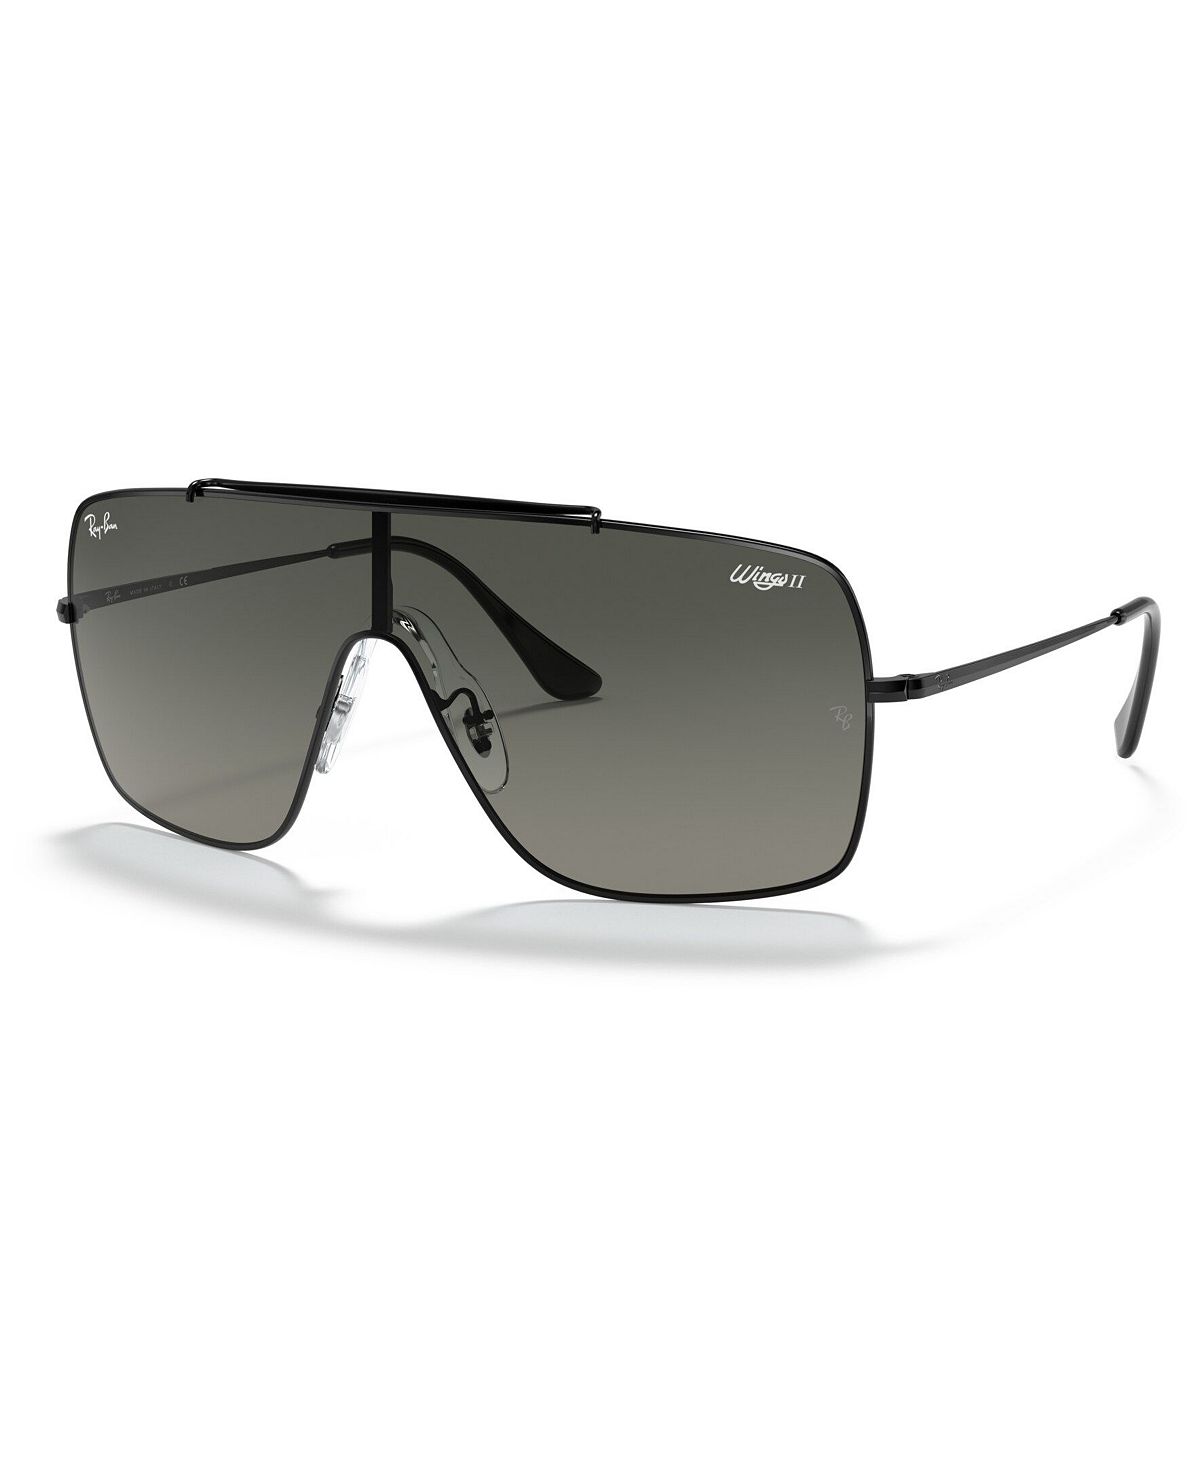 Солнцезащитные очки, rb3697 35 Ray-Ban, мульти солнцезащитные очки rb3697 35 ray ban